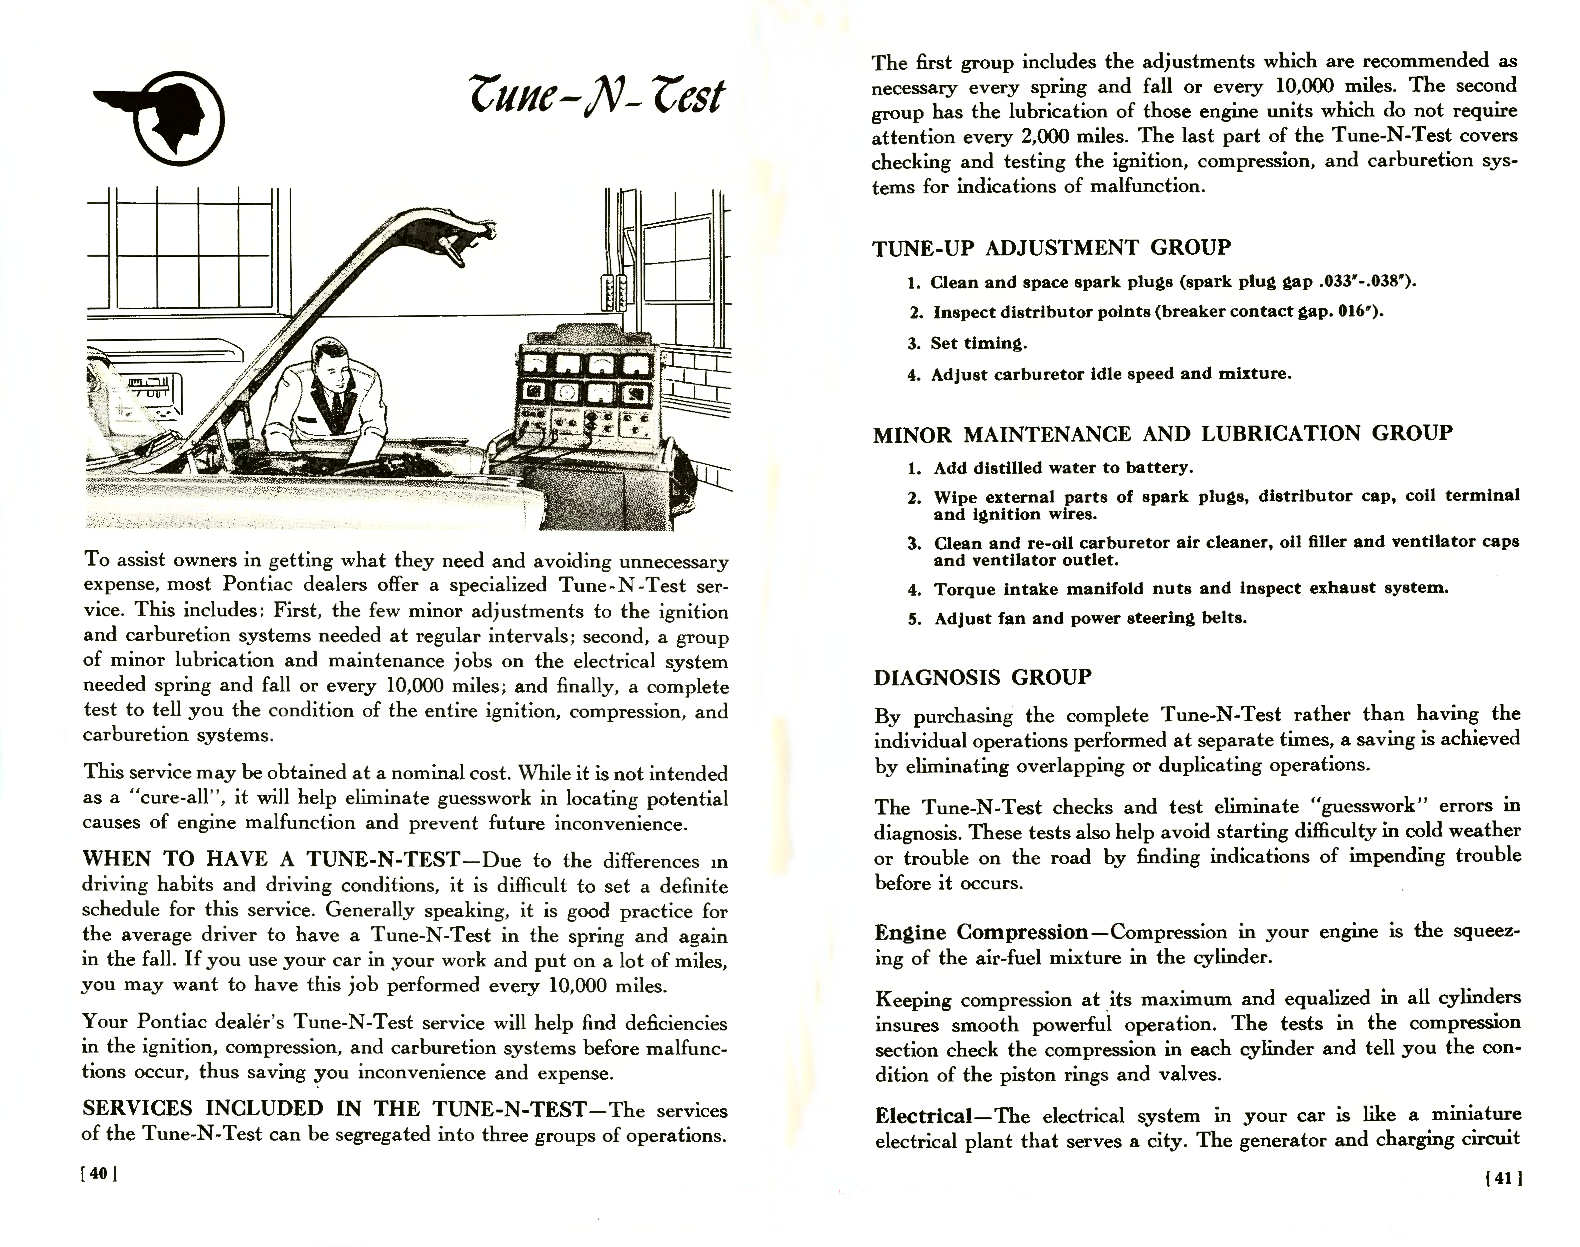 n_1957 Pontiac Owners Guide-40-41.jpg